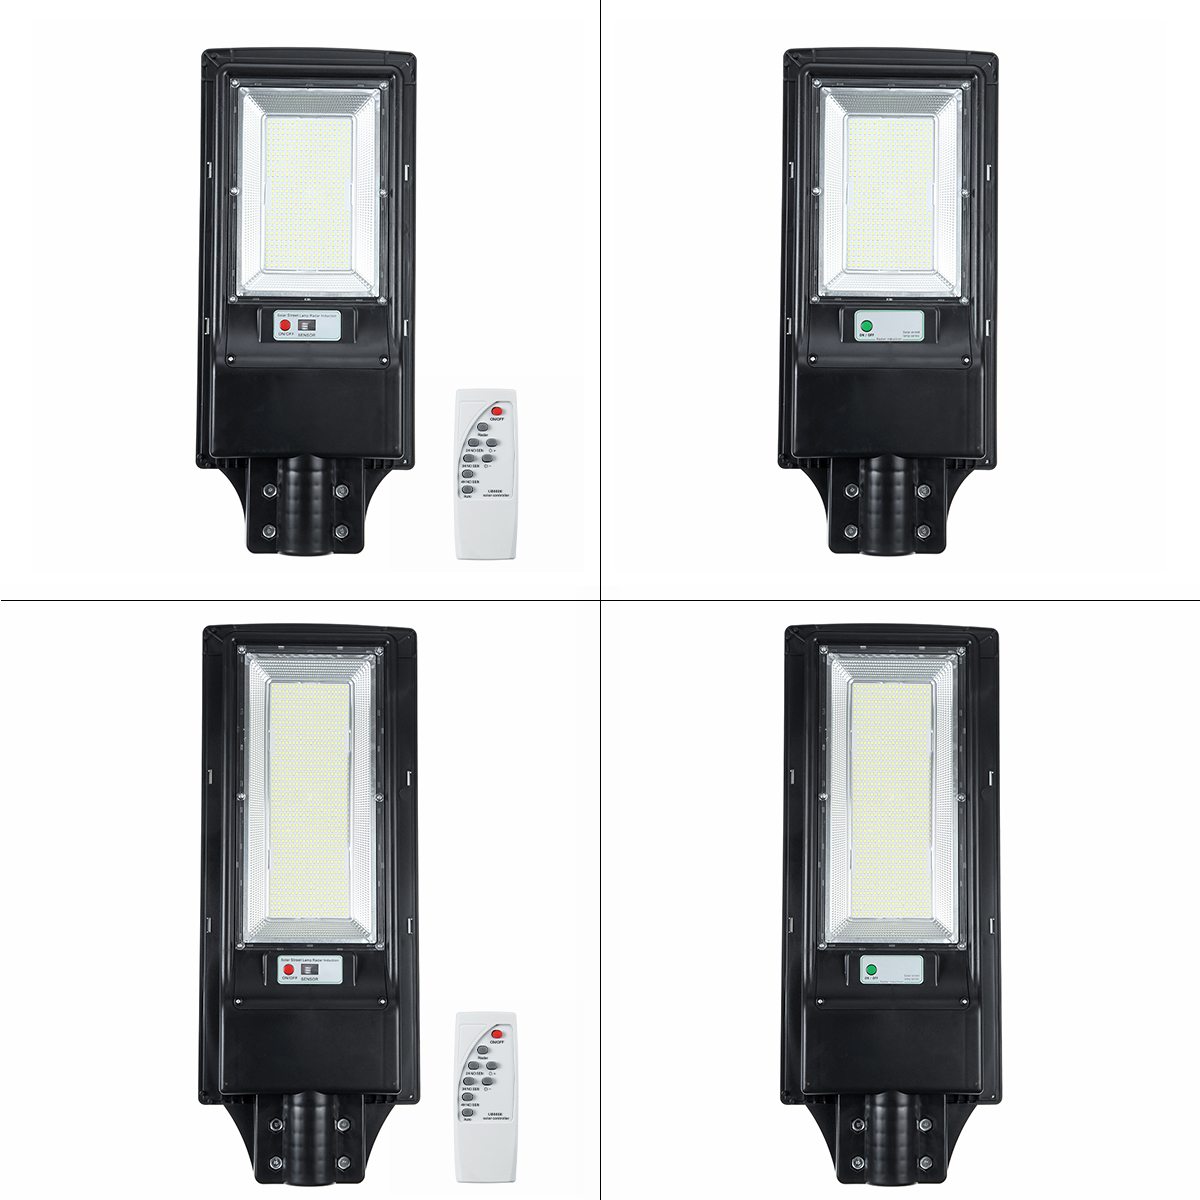 966492-LED-Solar-Street-Light-Motion-Sensor-Outdoor-Wall-LampRemote-1629138-6